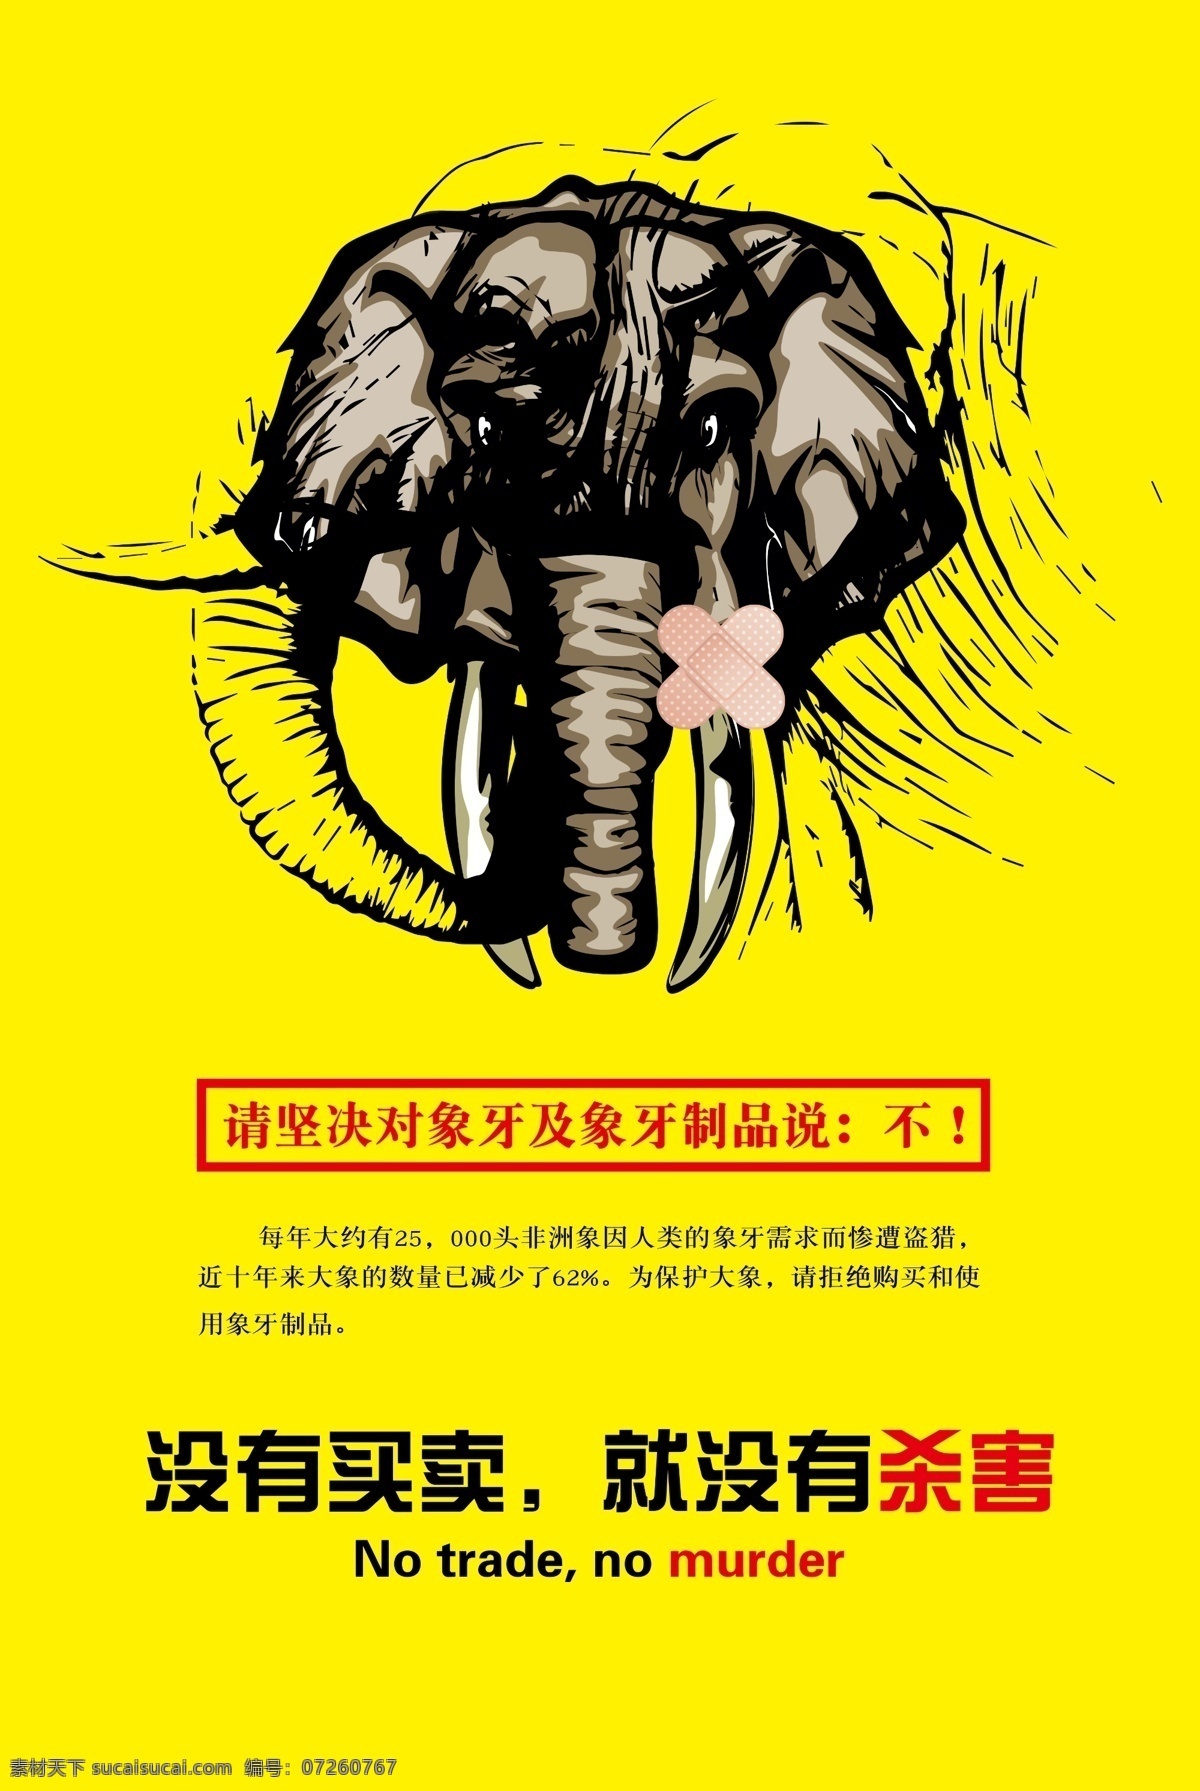 拒绝 象牙 制品 海报 拒绝象牙制品 没有买卖 没有杀害 保护大象 拒绝象牙